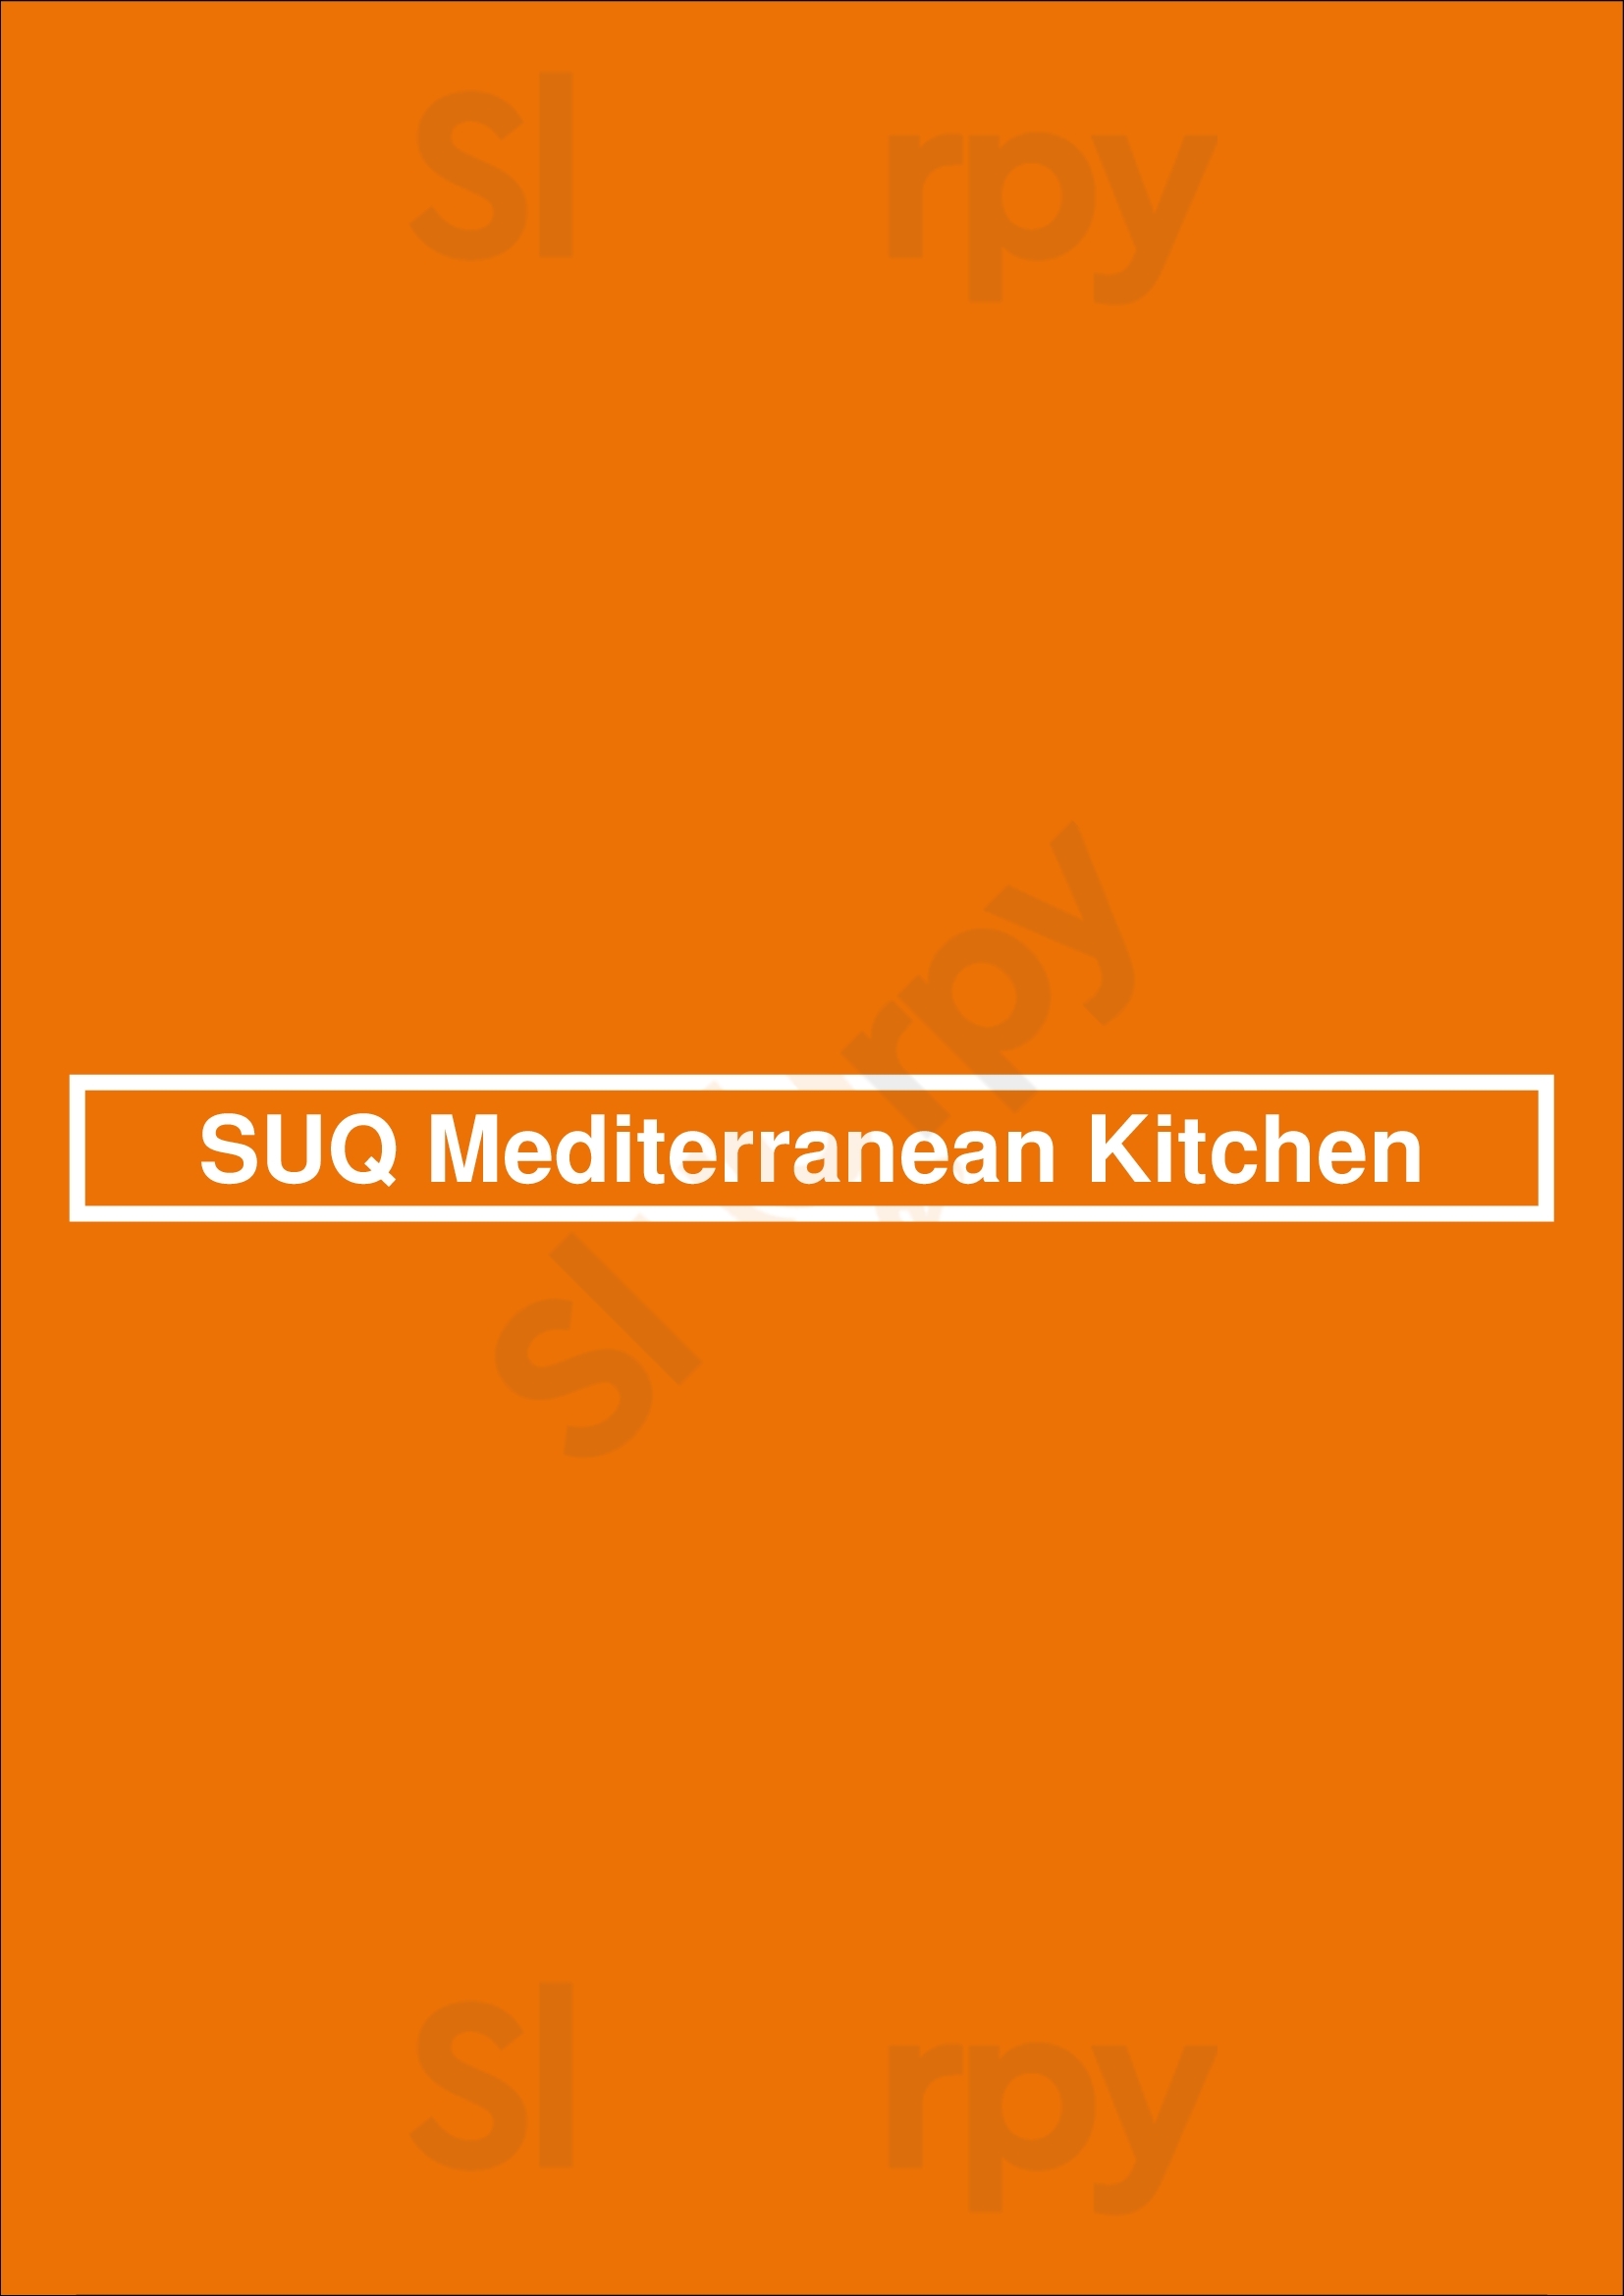 Suq Mediterranean Kitchen Toronto Menu - 1